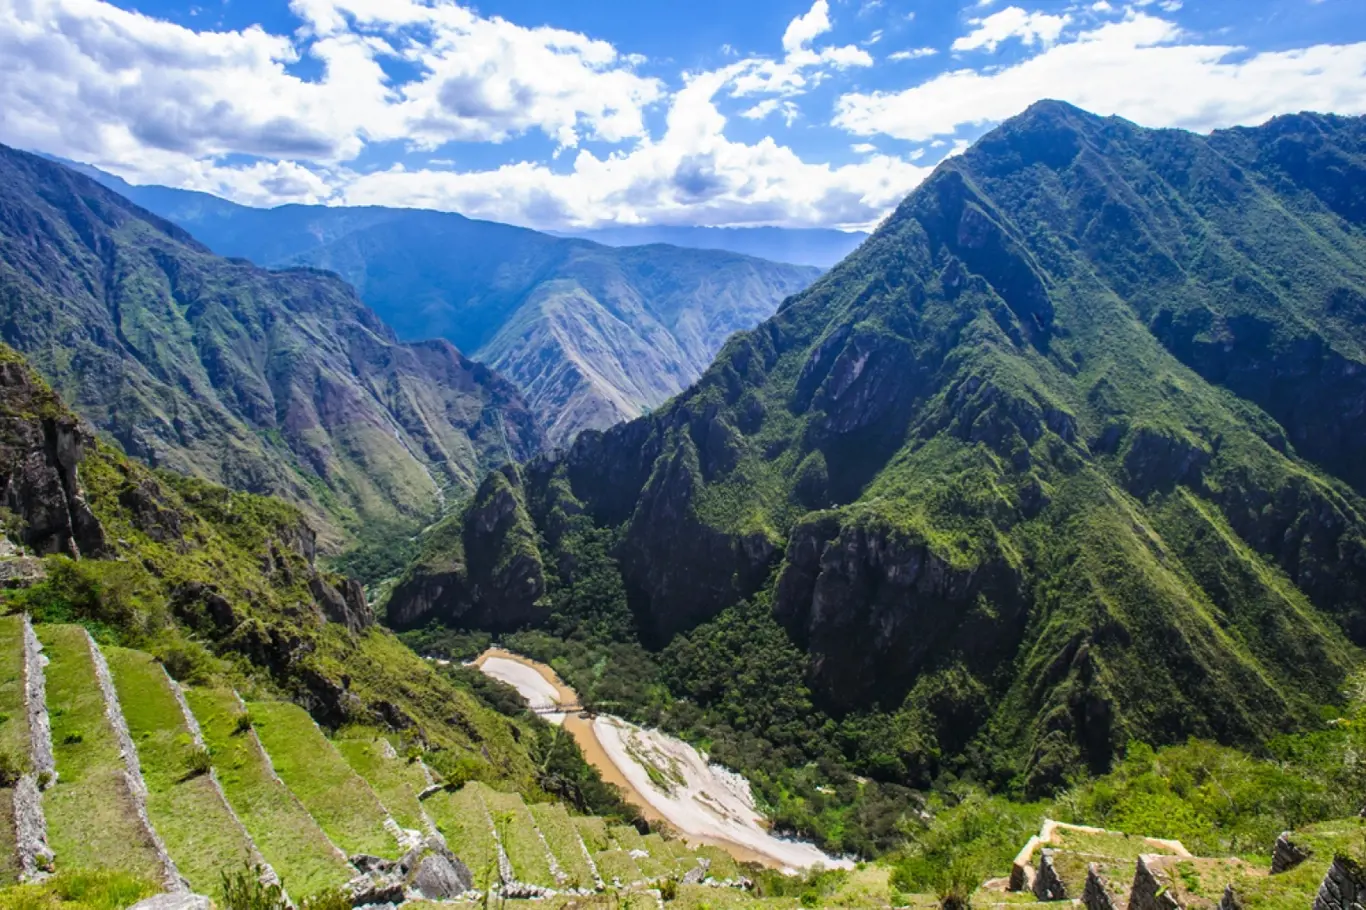 Zážitky - Co můžete podniknout v Cuzco, kromě návštěvy Machu Picchu